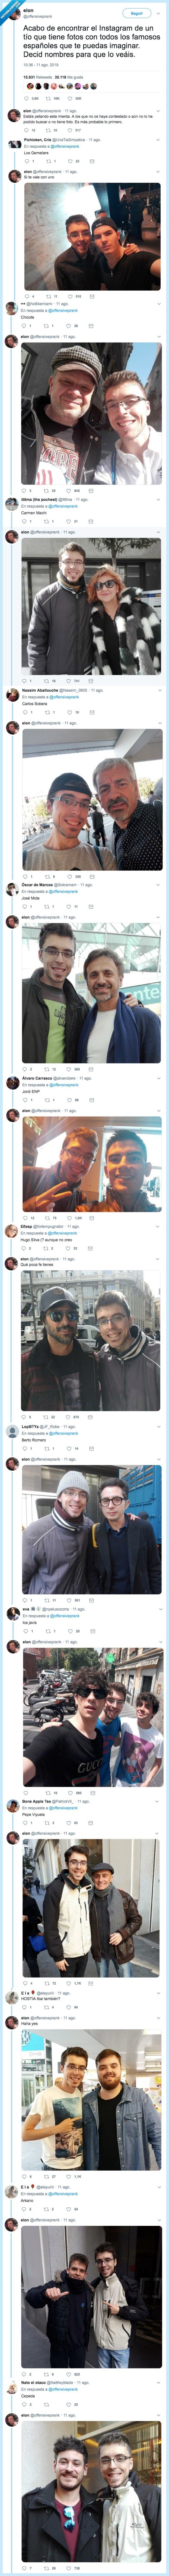 524447 - Descubren el instagram de un tío que tiene fotos con todos los famosos de España. Y le sueltan nombres random para ver si tiene foto con ellos. Por @offensiveprank